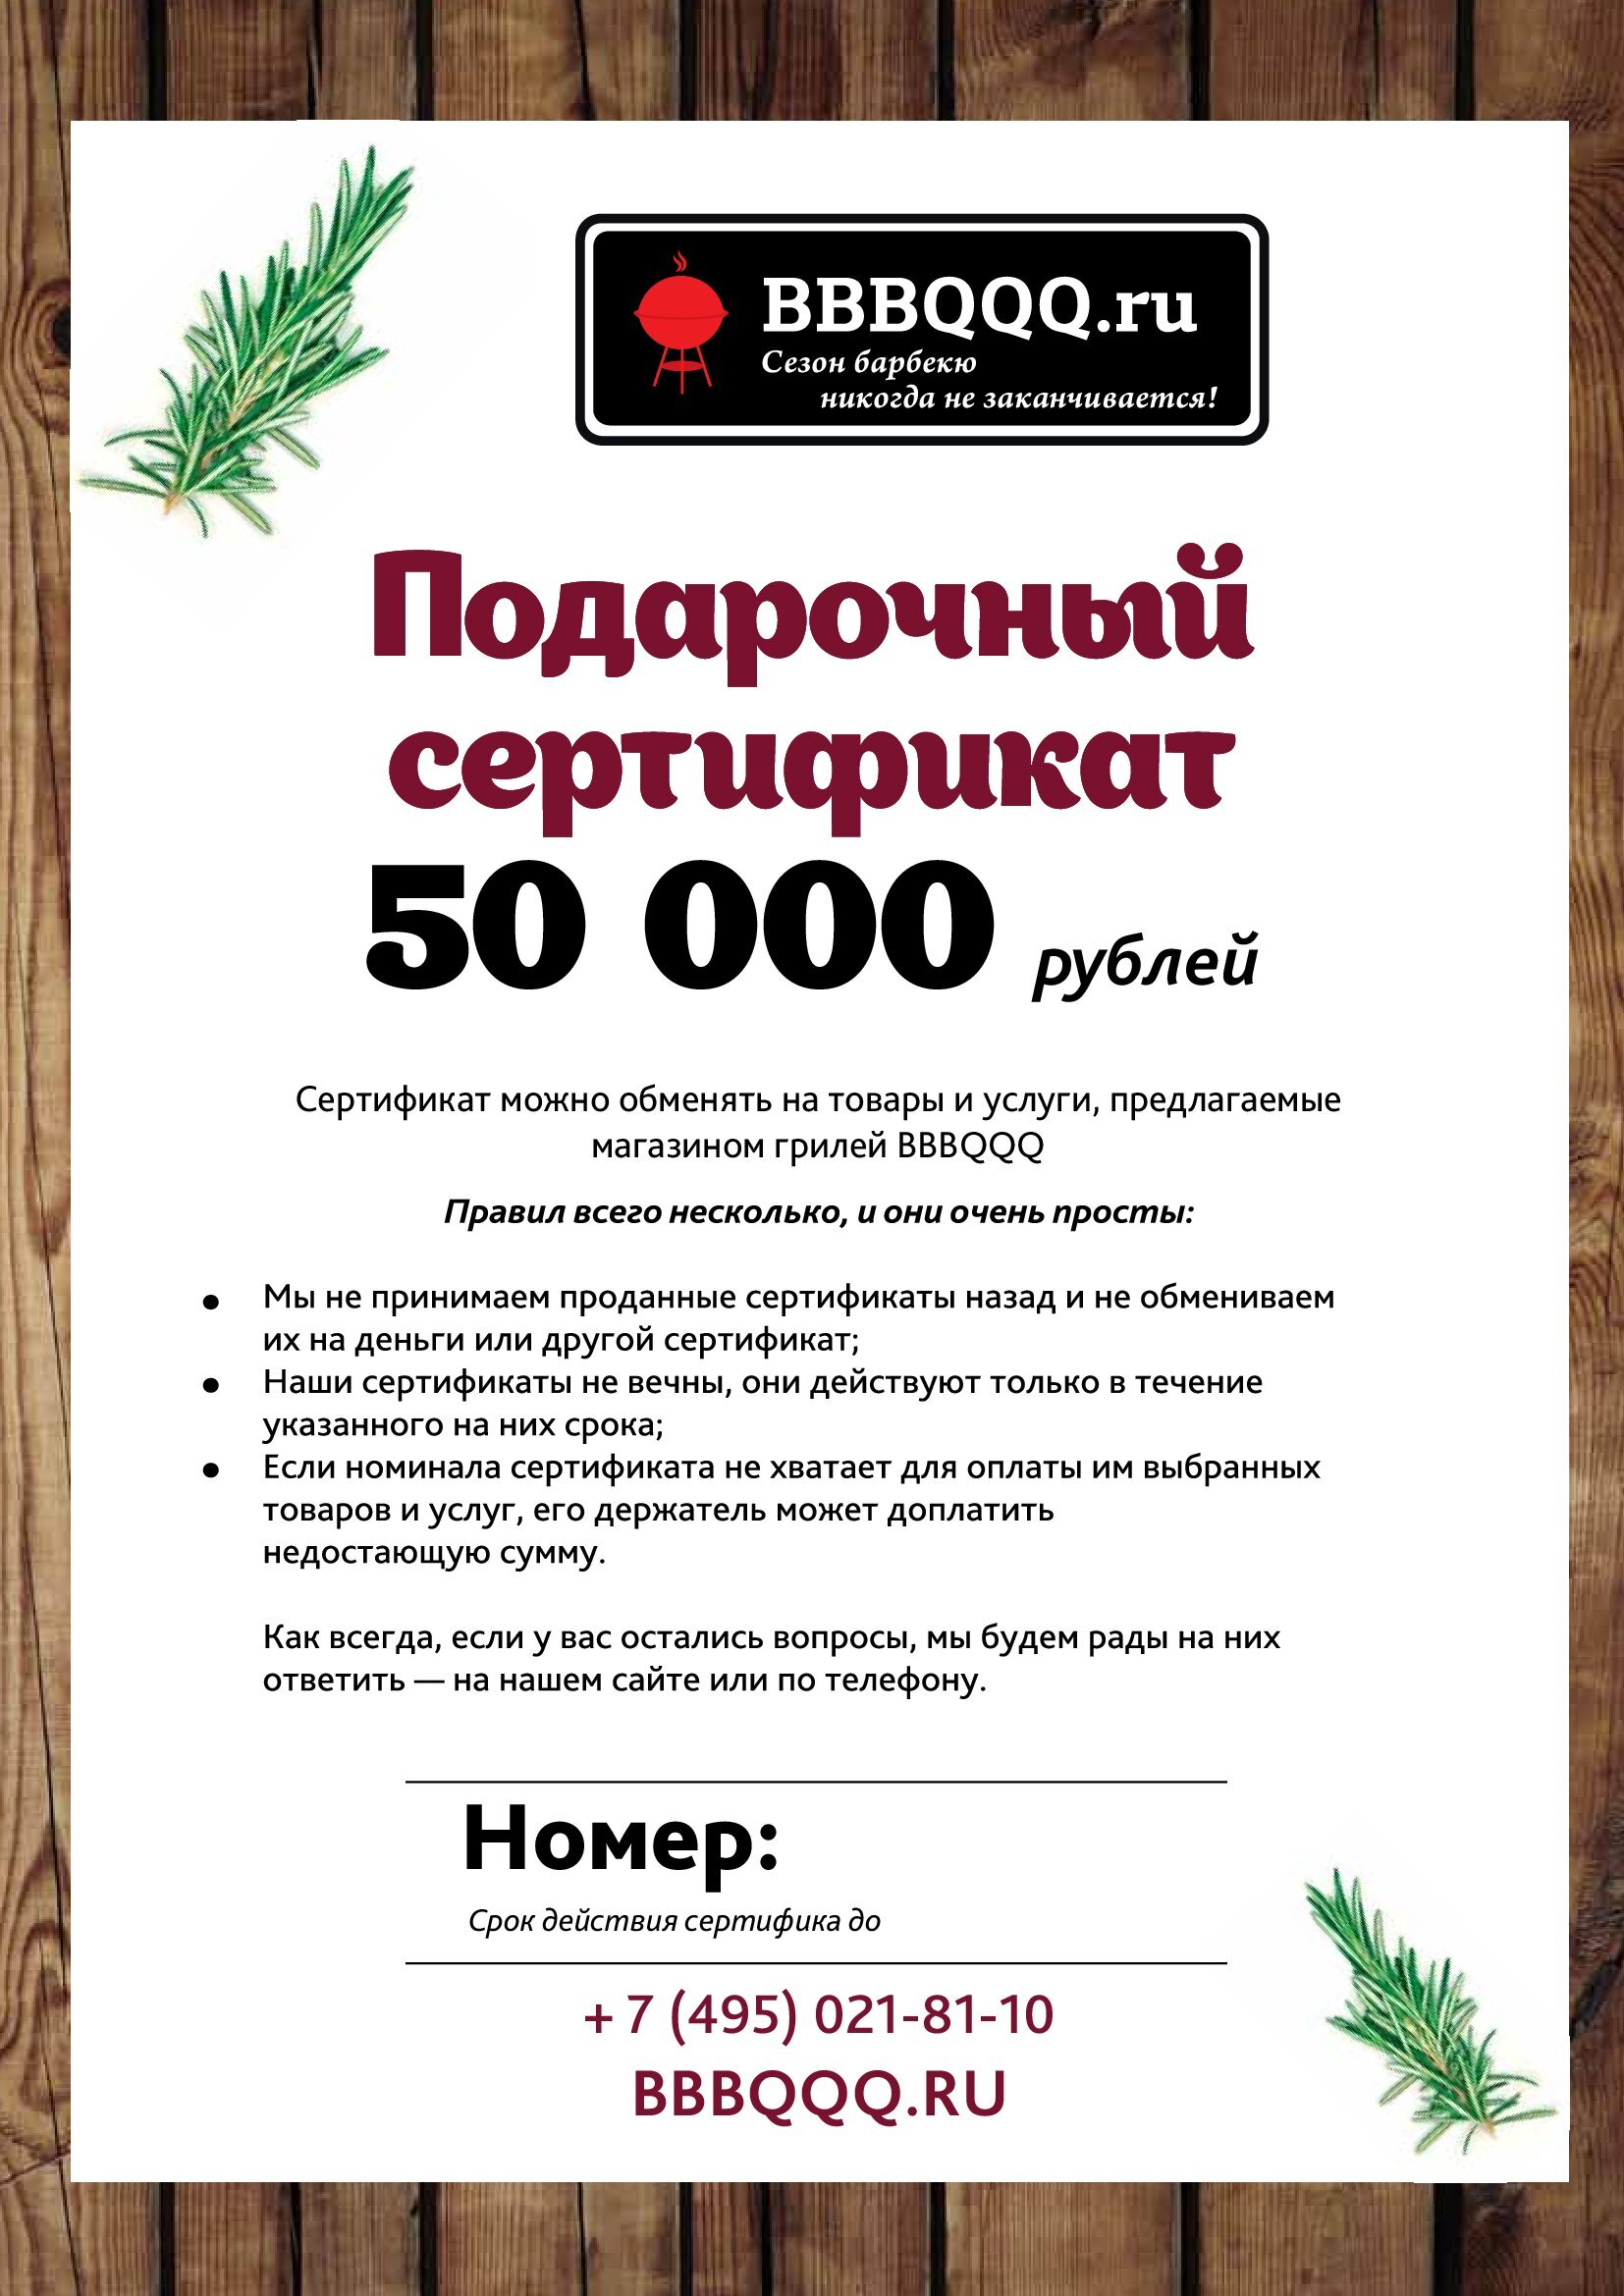 Подарочный сертификат BBBQQQ 50 000 руб